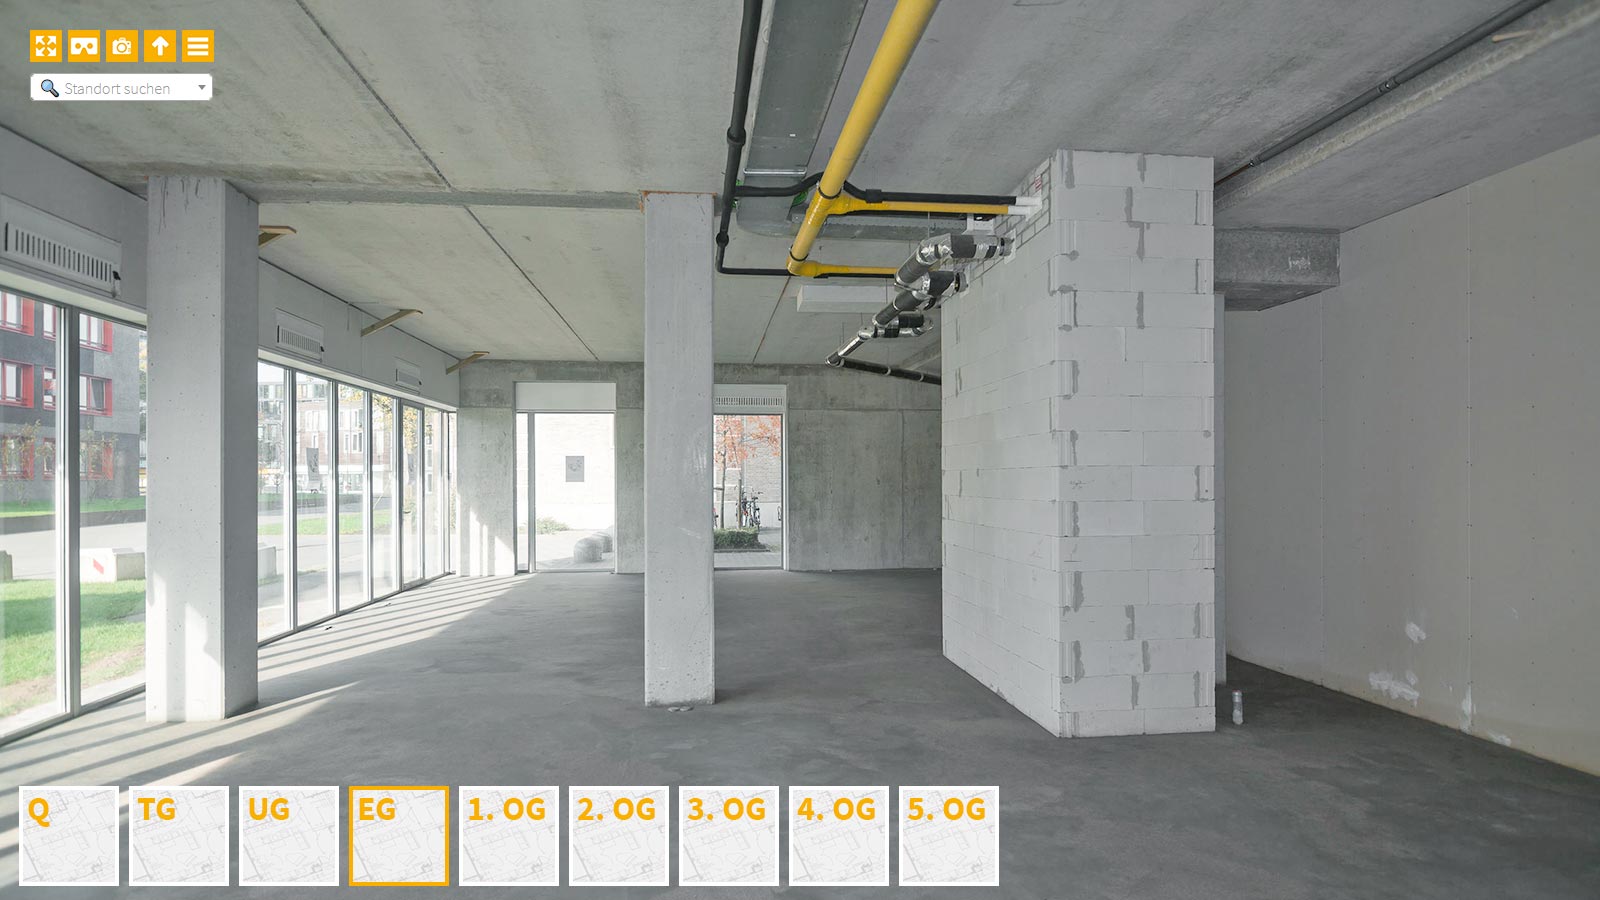 Baudokumentation 360 Grad bei gestörten Projekten in 


	


	


	


	


	


	


	


	


	


	Kassel









, Bilddokumentation als virtueller Rundgang